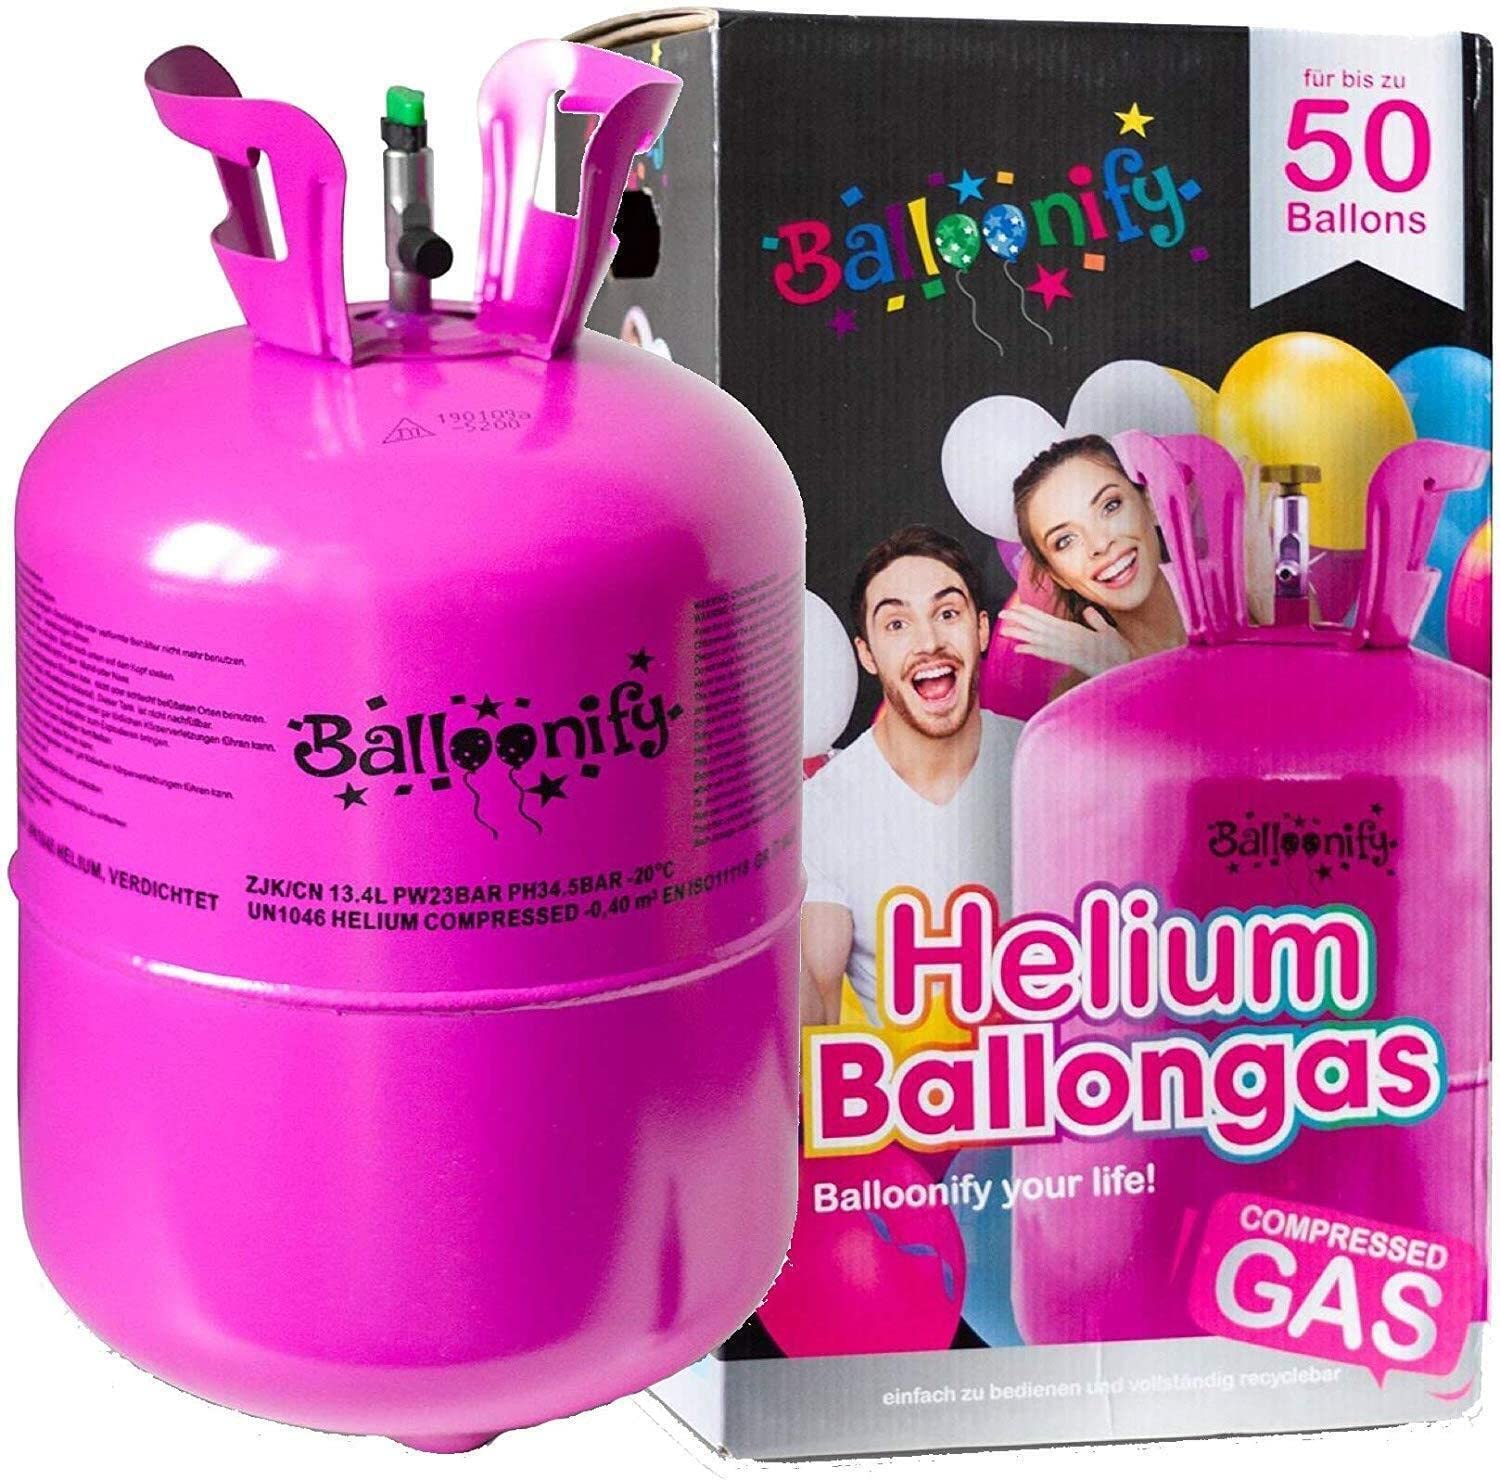 Helium Ballongas für 20/30/50 Ballons | Heliumflasche Set mit Knickventil für Luftballons + Folienballons | Geburtstag Party Hochzeit Flasche, Größe: Ballongas für 50 Ballons